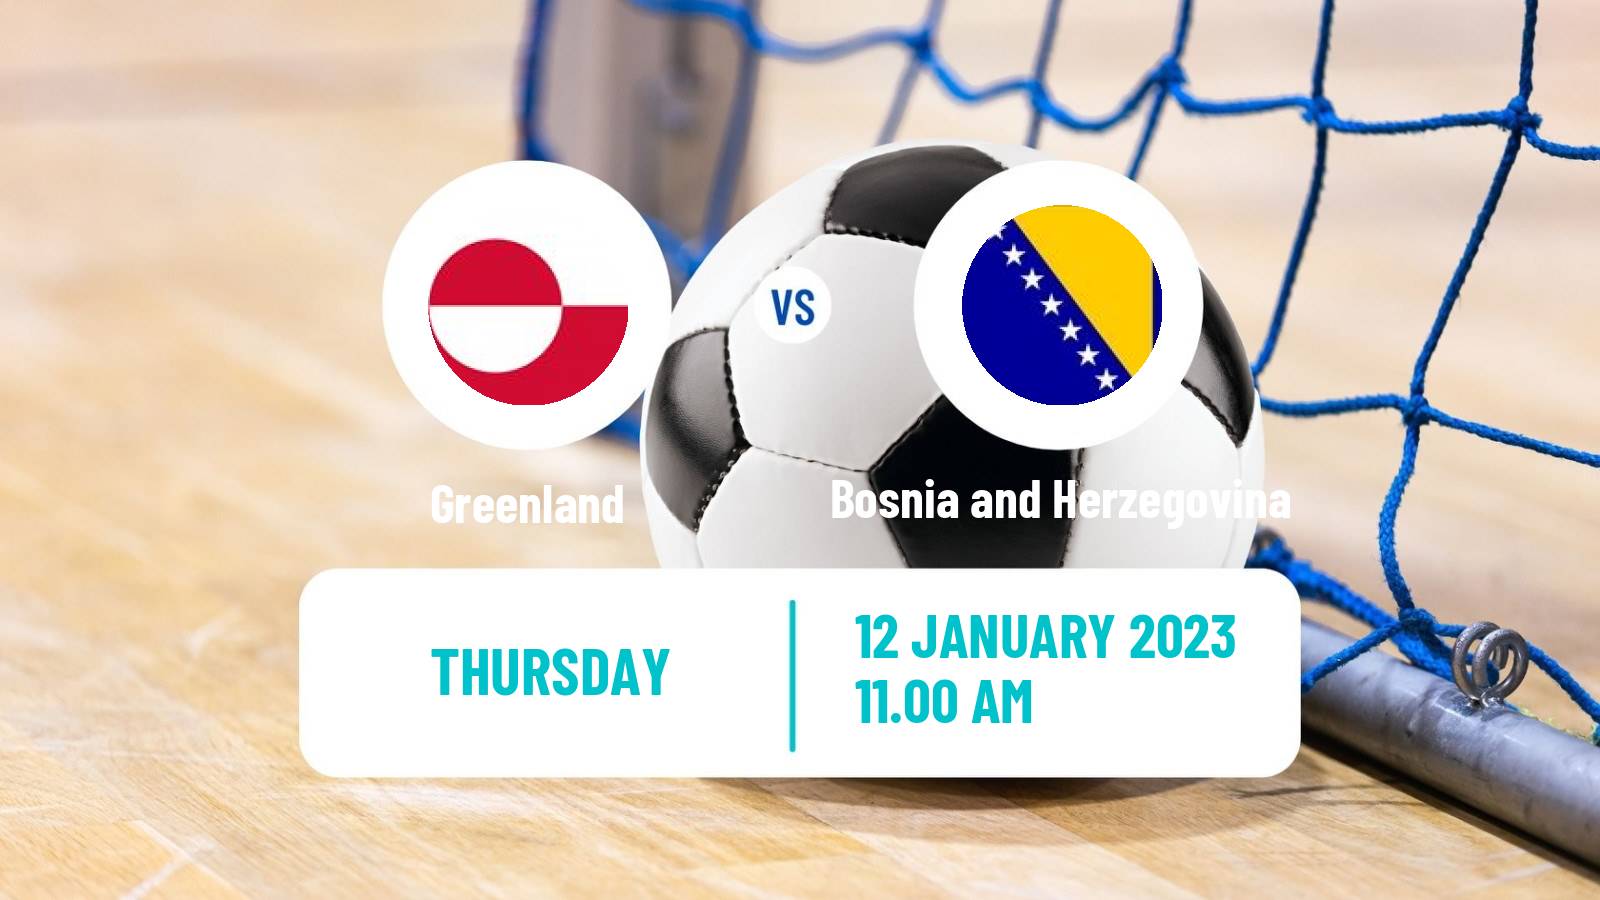 Futsal Friendly International Futsal Greenland - Bosnia and Herzegovina